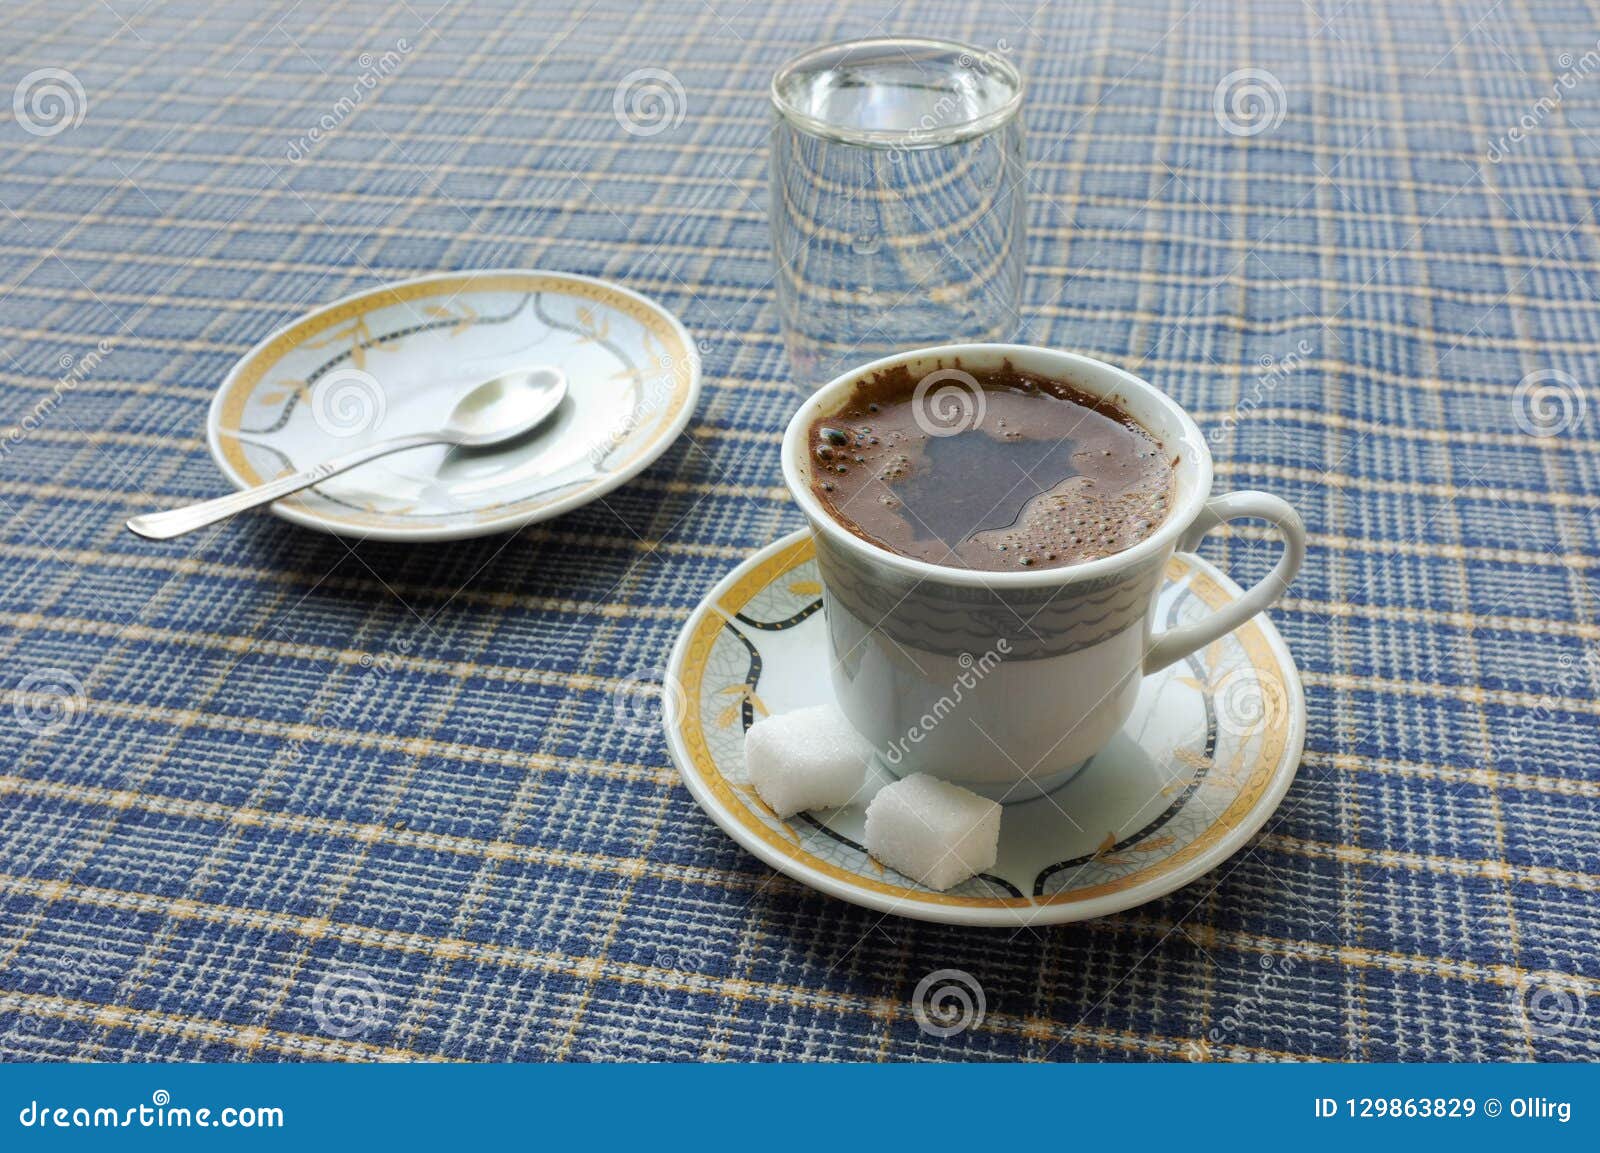 turkish coffee, serbia